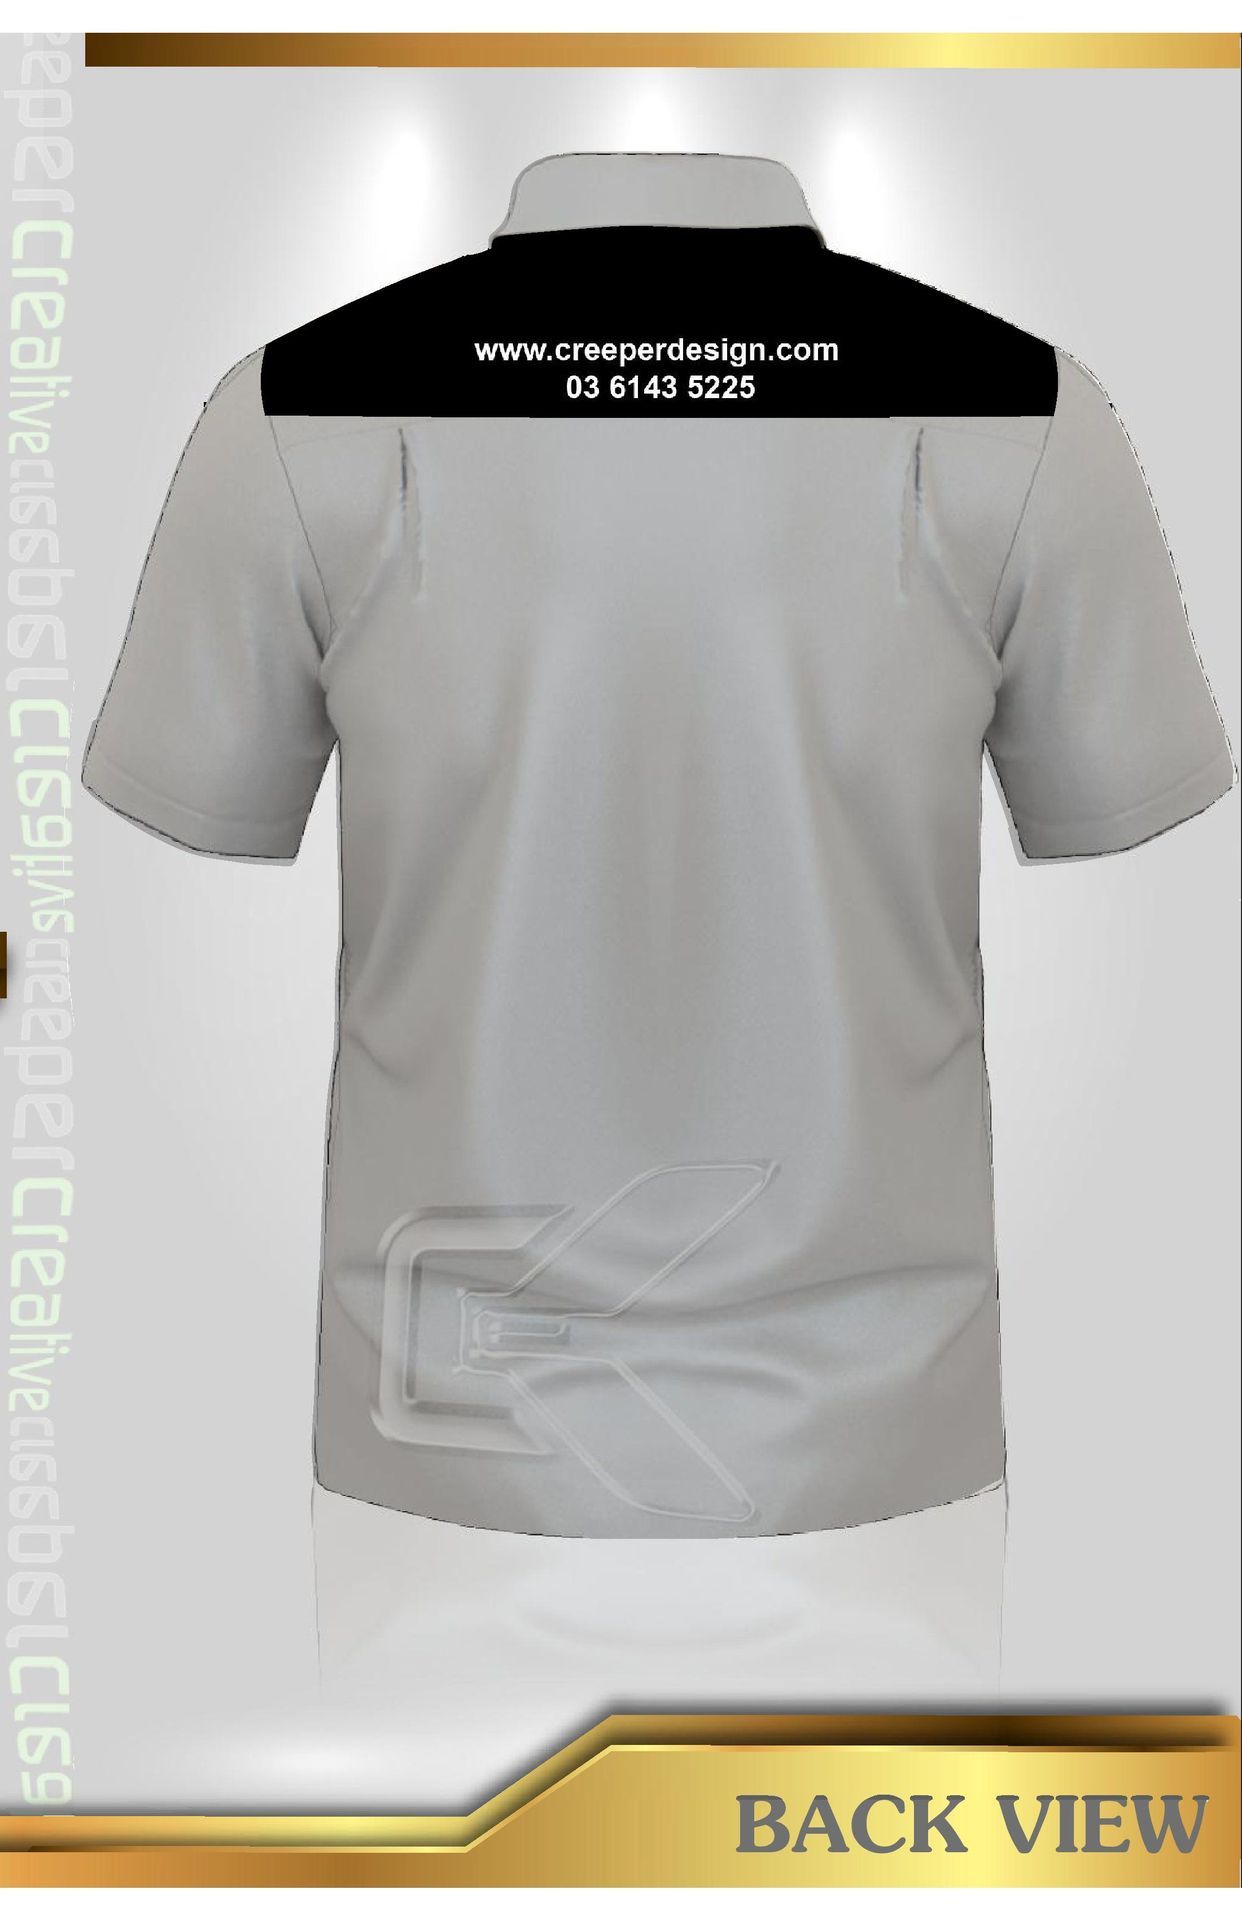 Corporate Shirt Design. Corporate Shirt Design Project Description ...